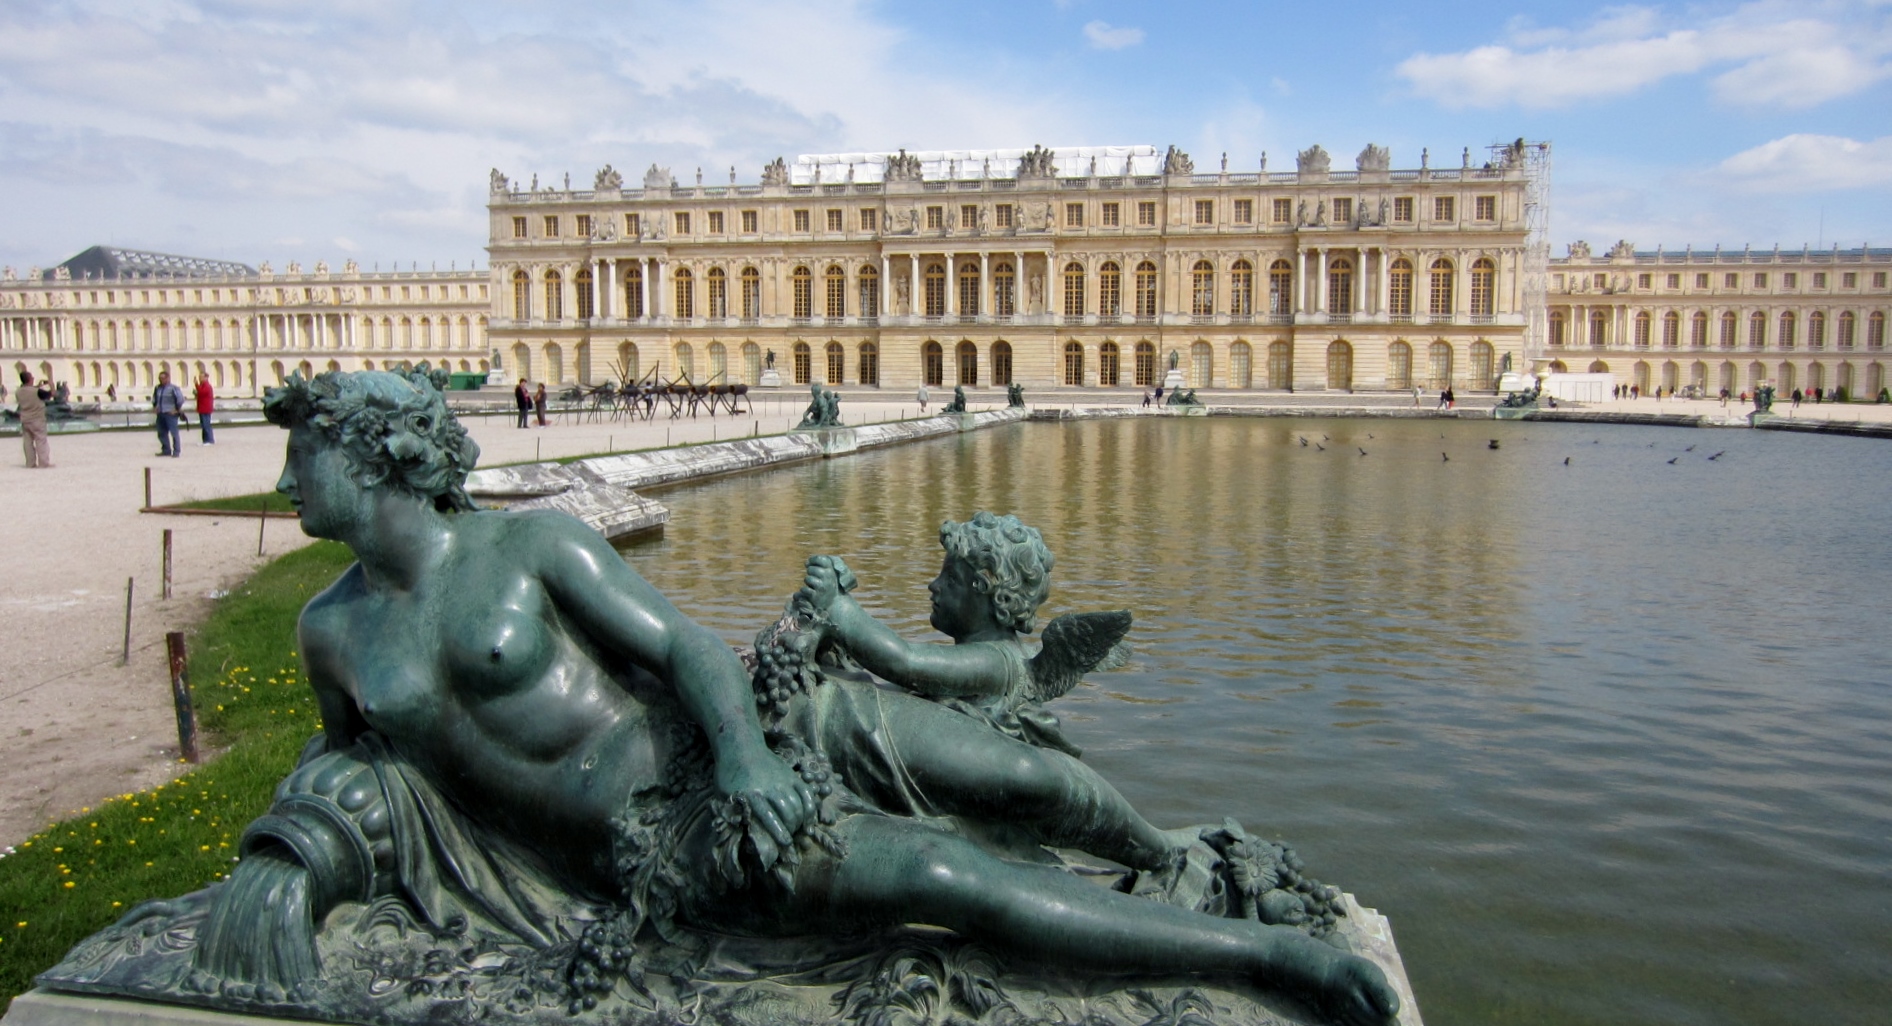 Amazing-Chateau-de-Versailles-Palace-Paris